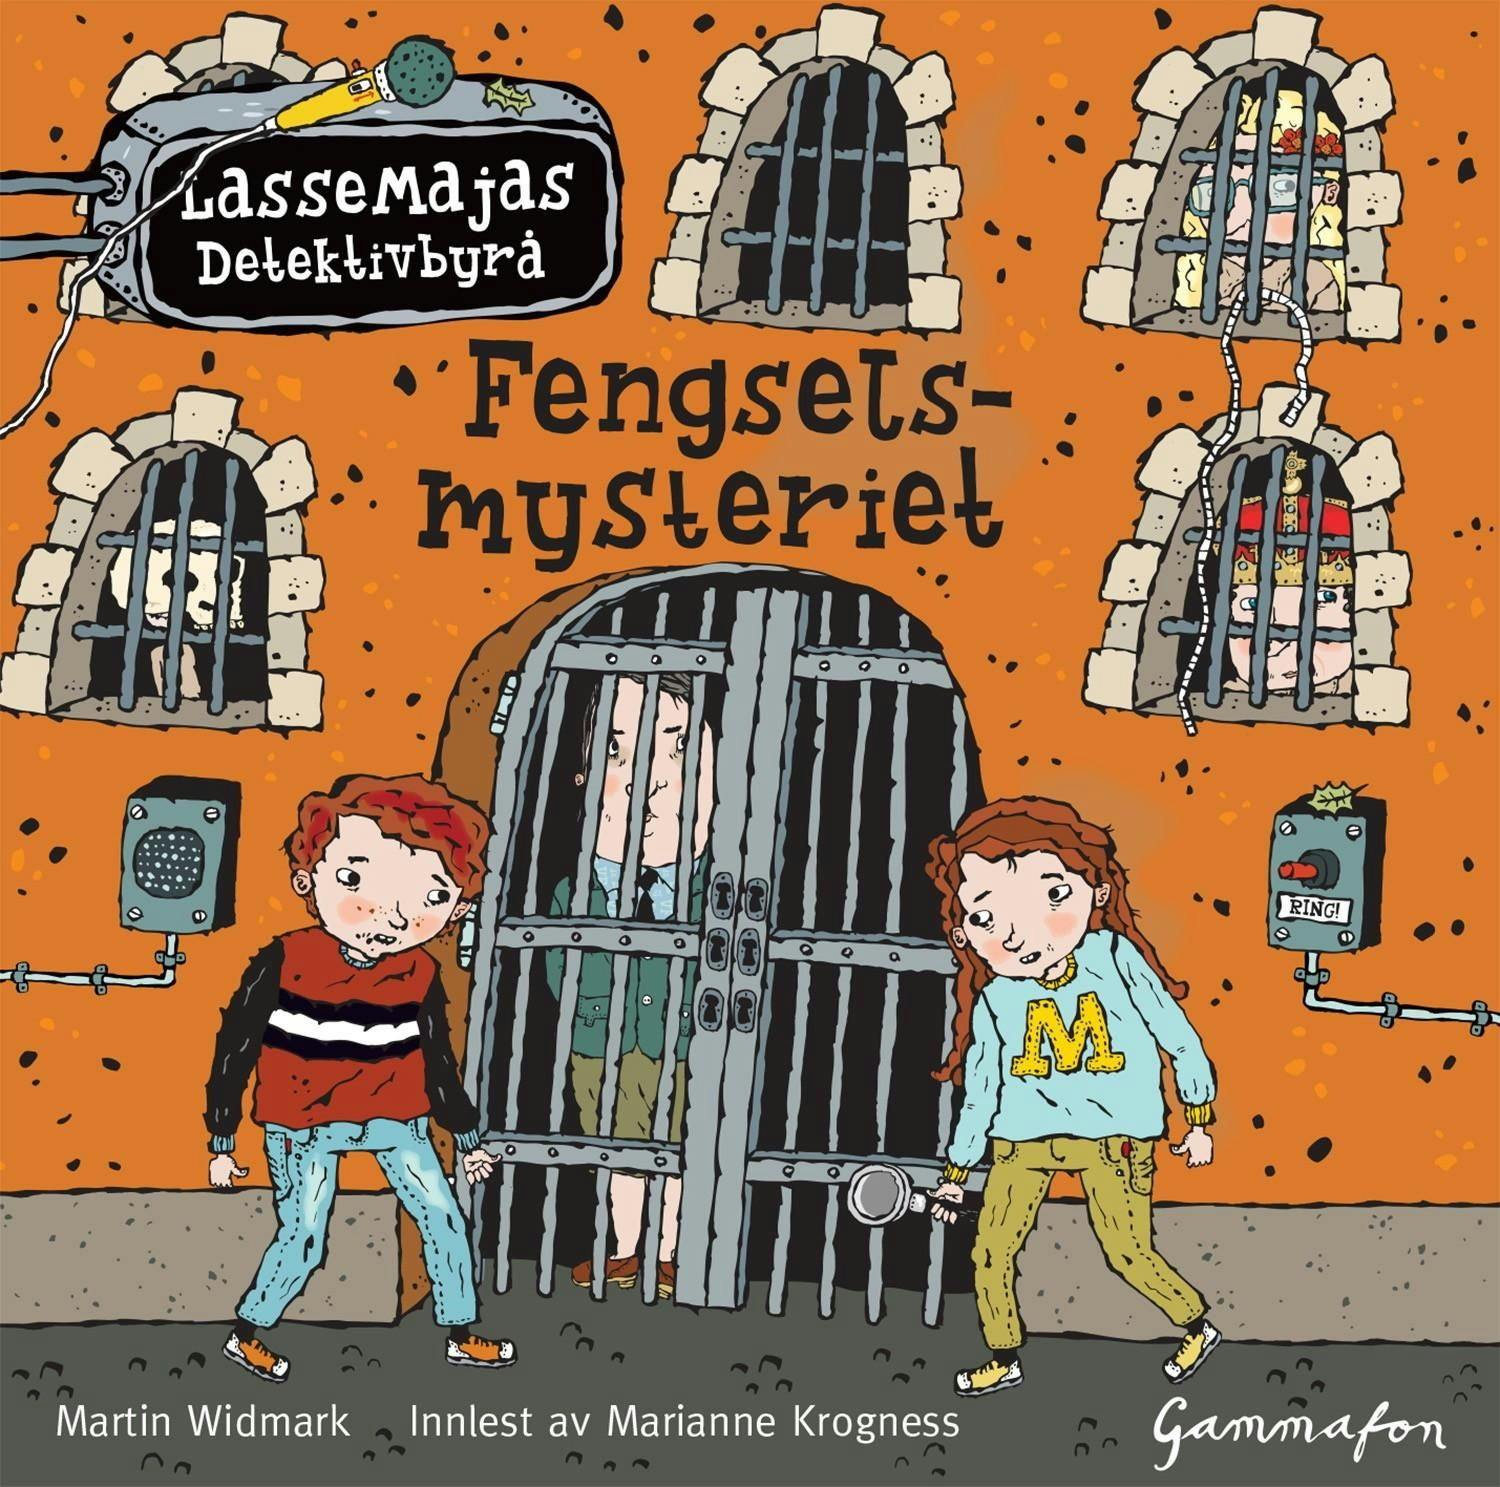 LasseMaja - Fengselsmysteriet - Martin Widmark